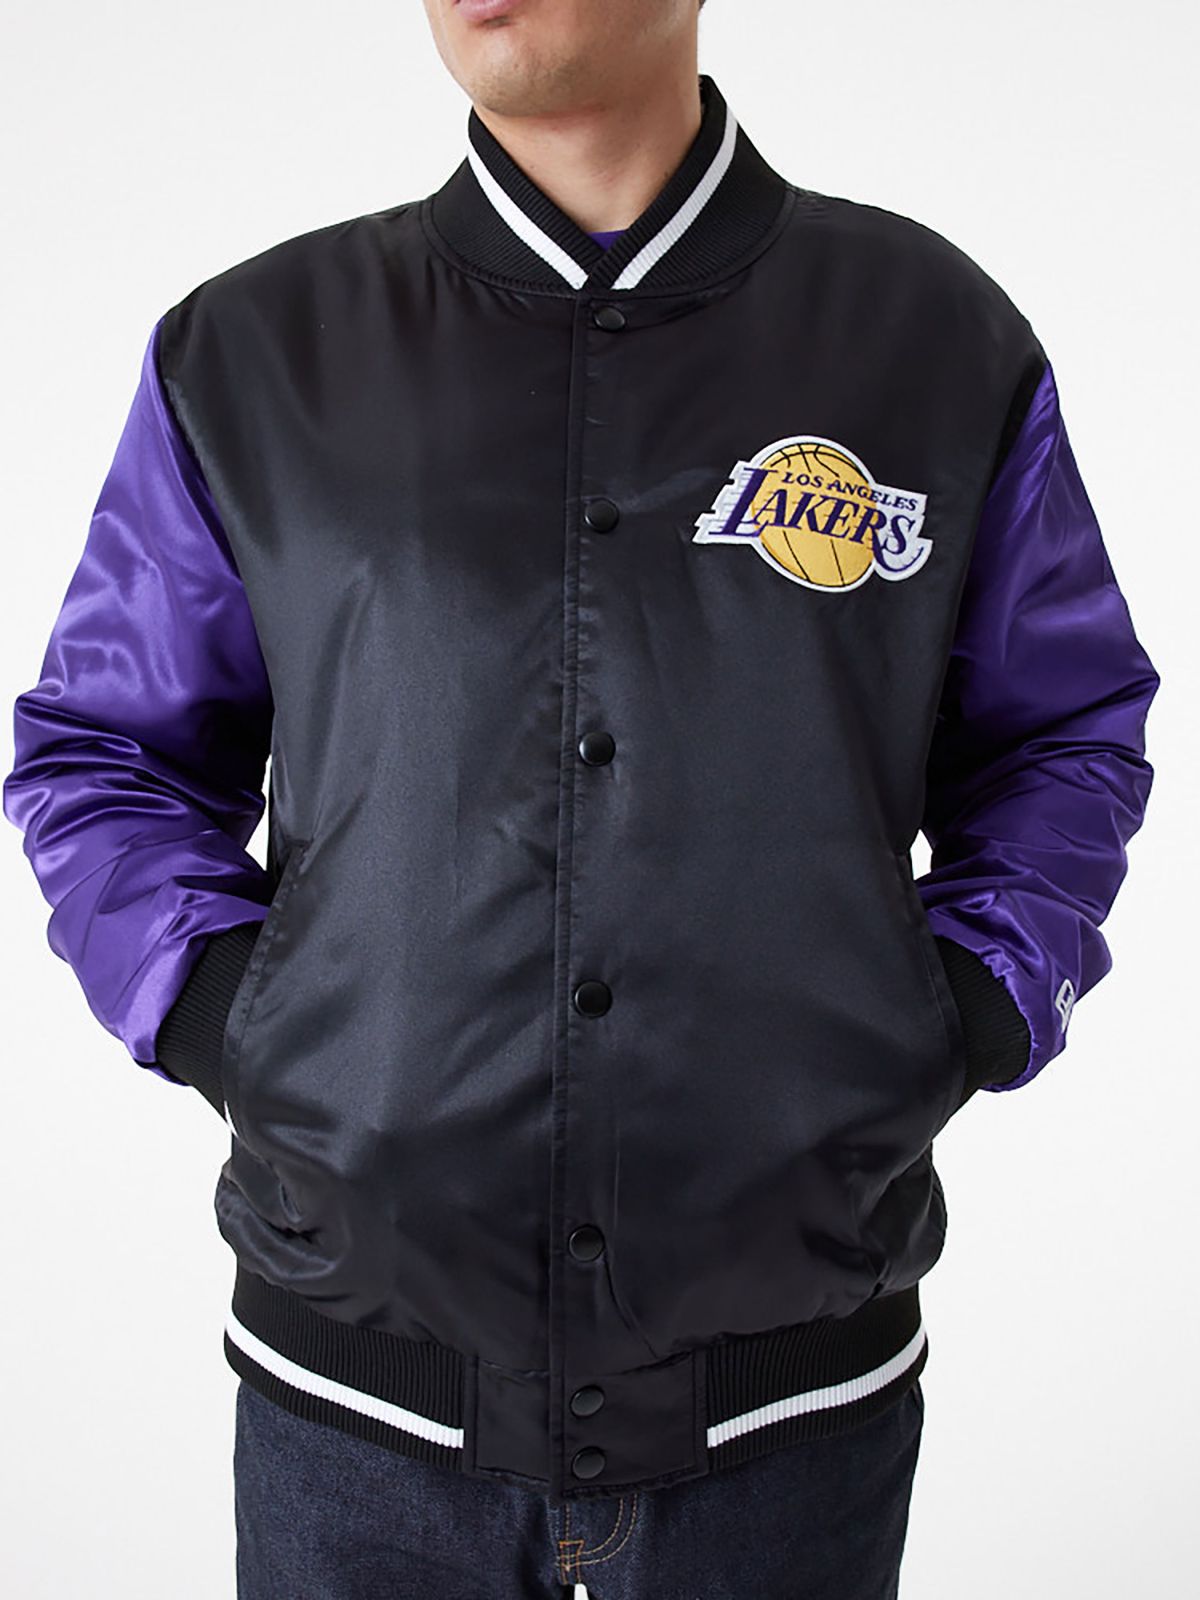  ג'קט בומבר עם לוגו Lakers של NEW ERA